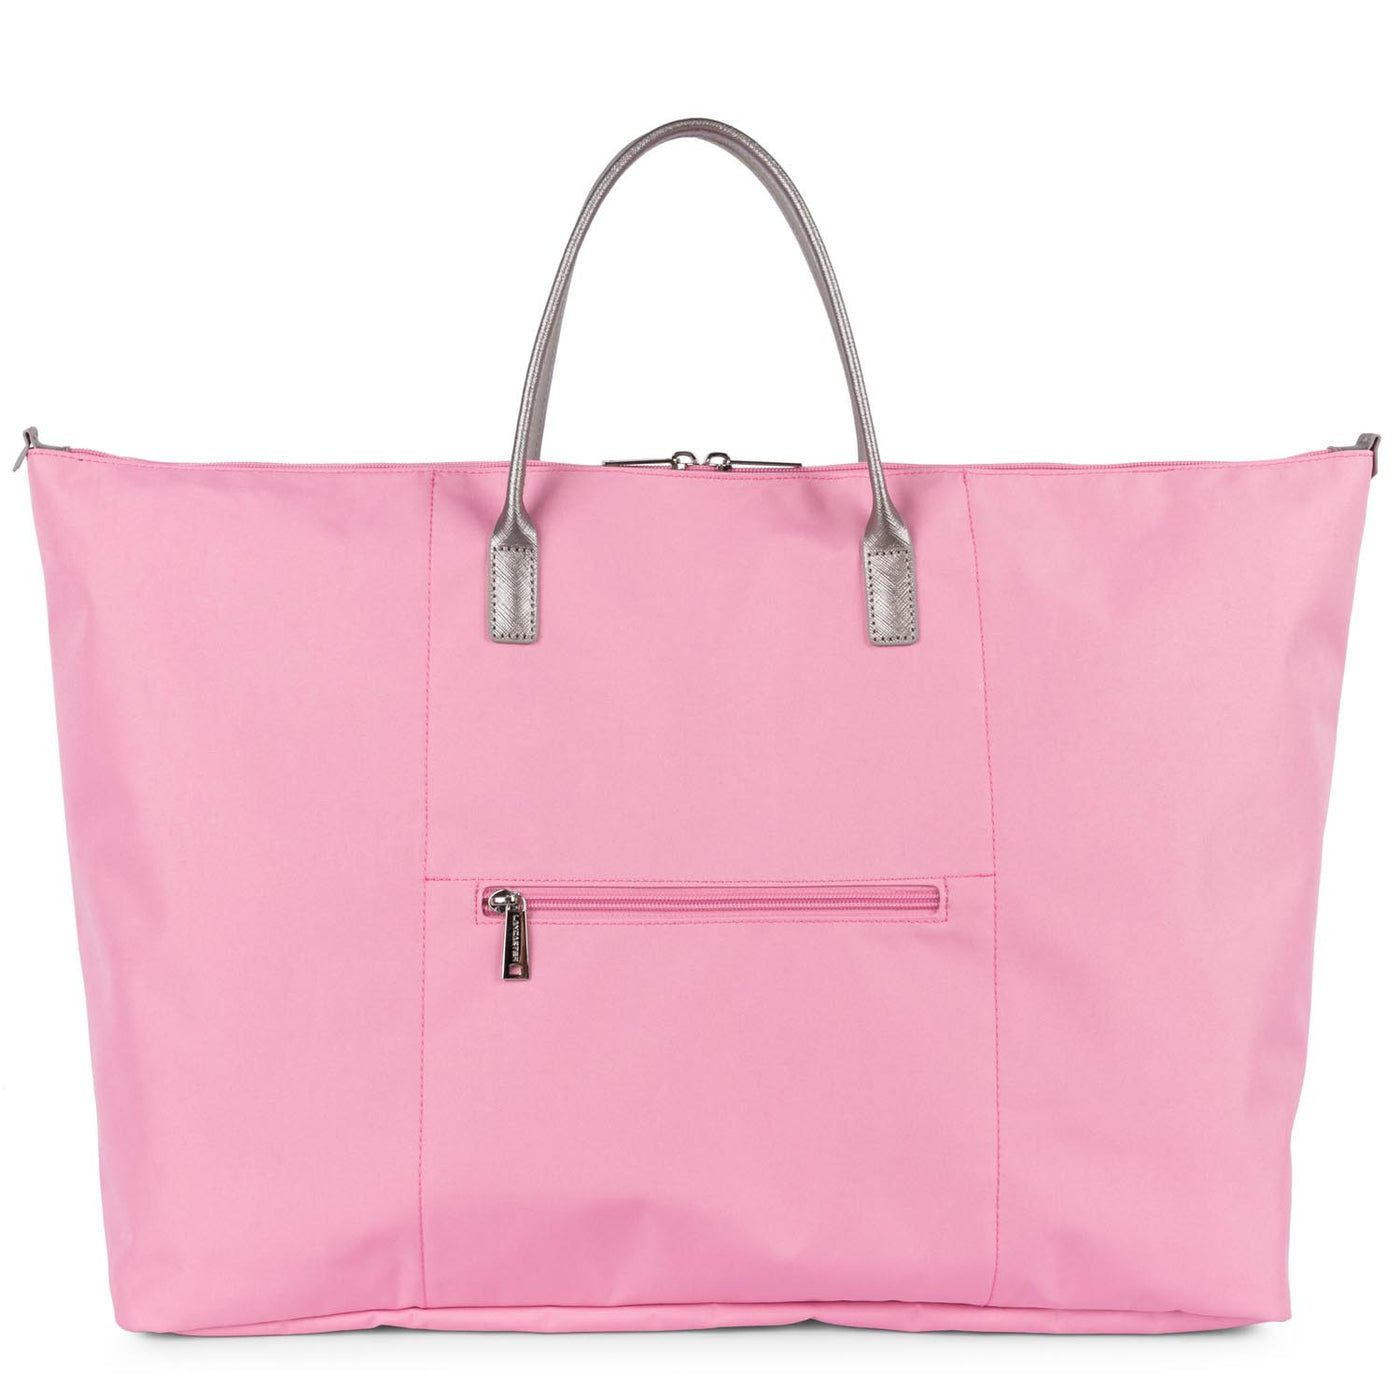 weekender bag - smart kba #couleur_rose